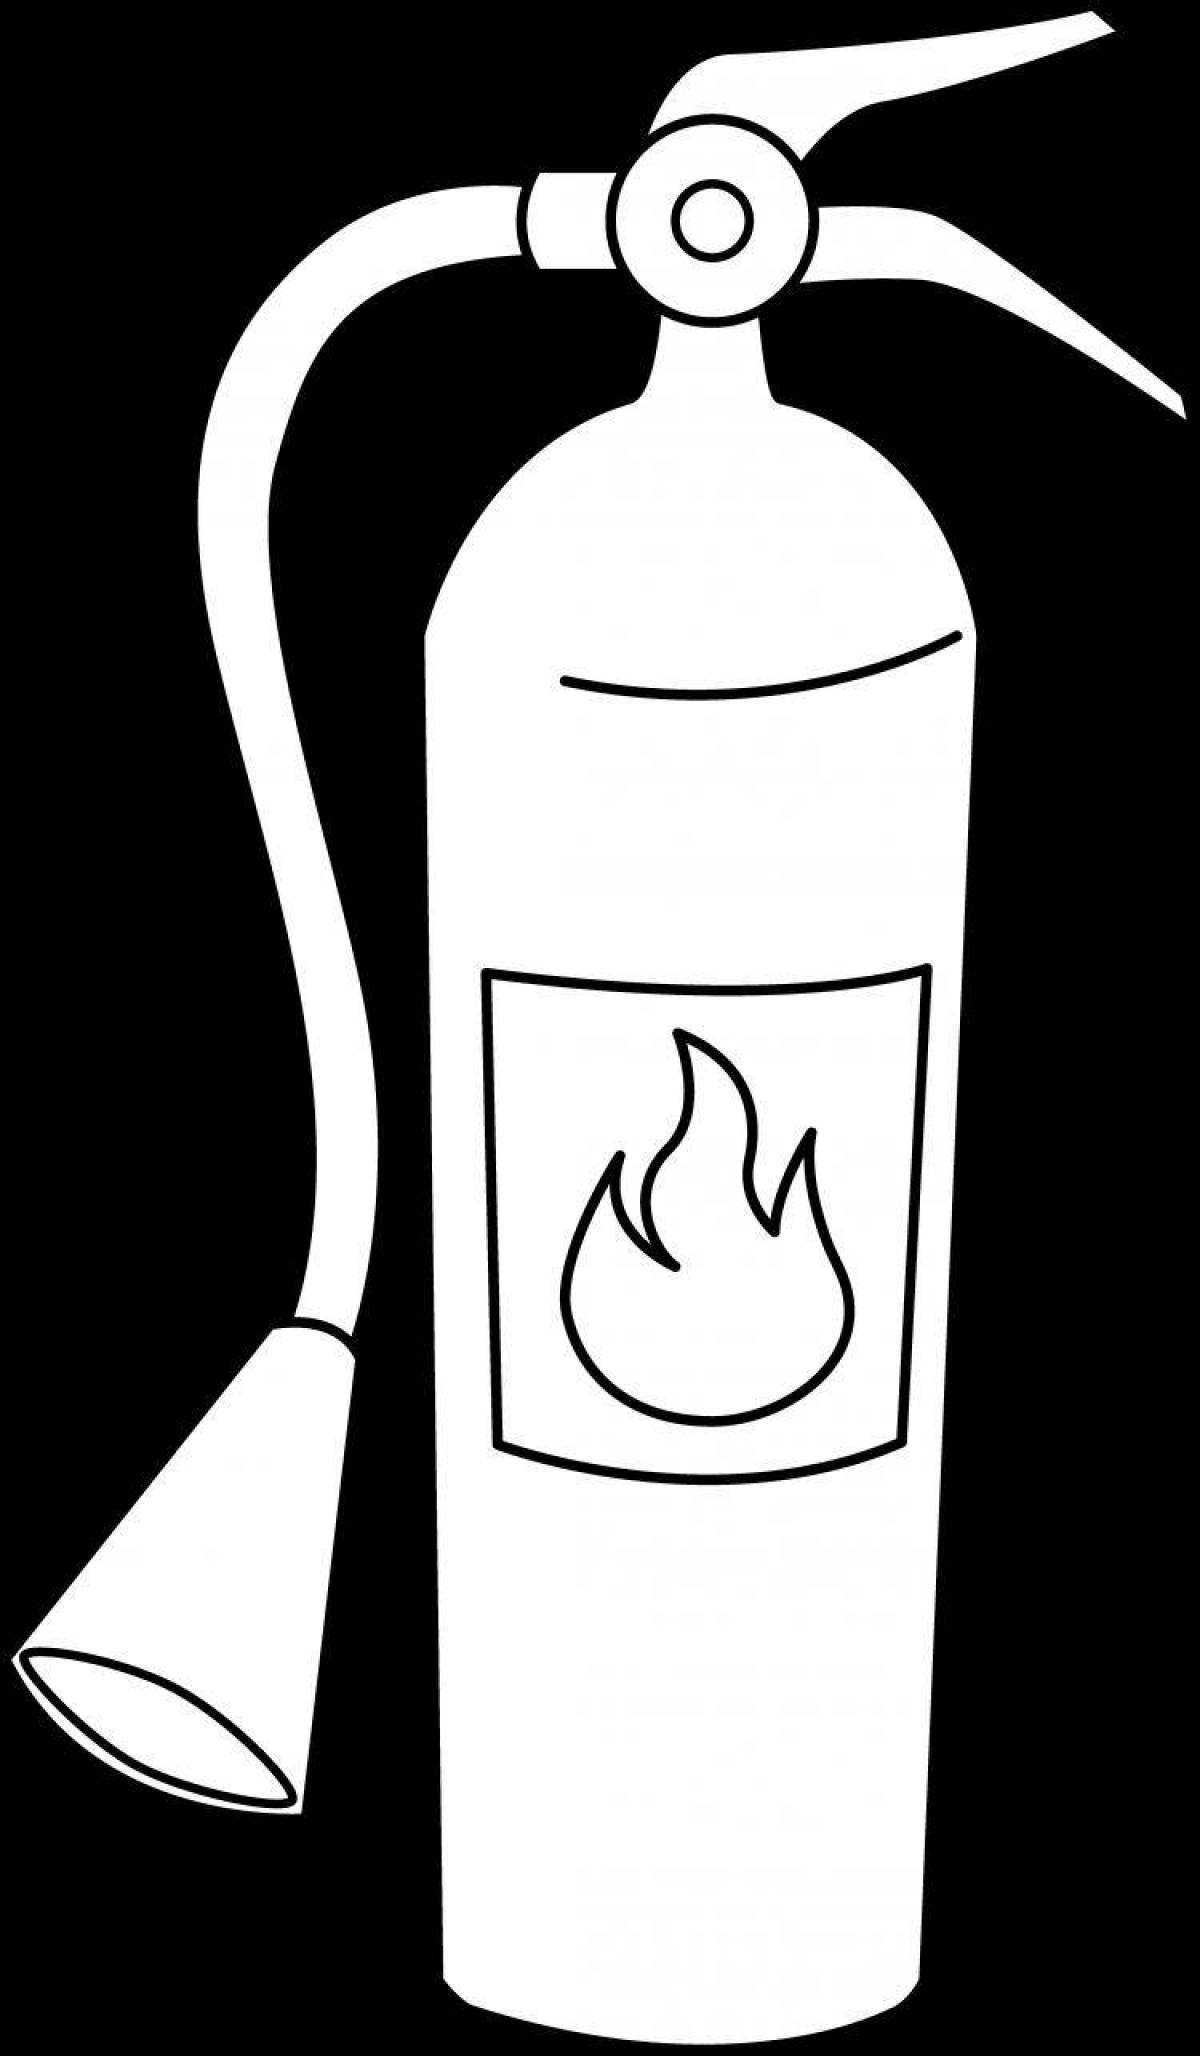 Fire extinguisher for children #1